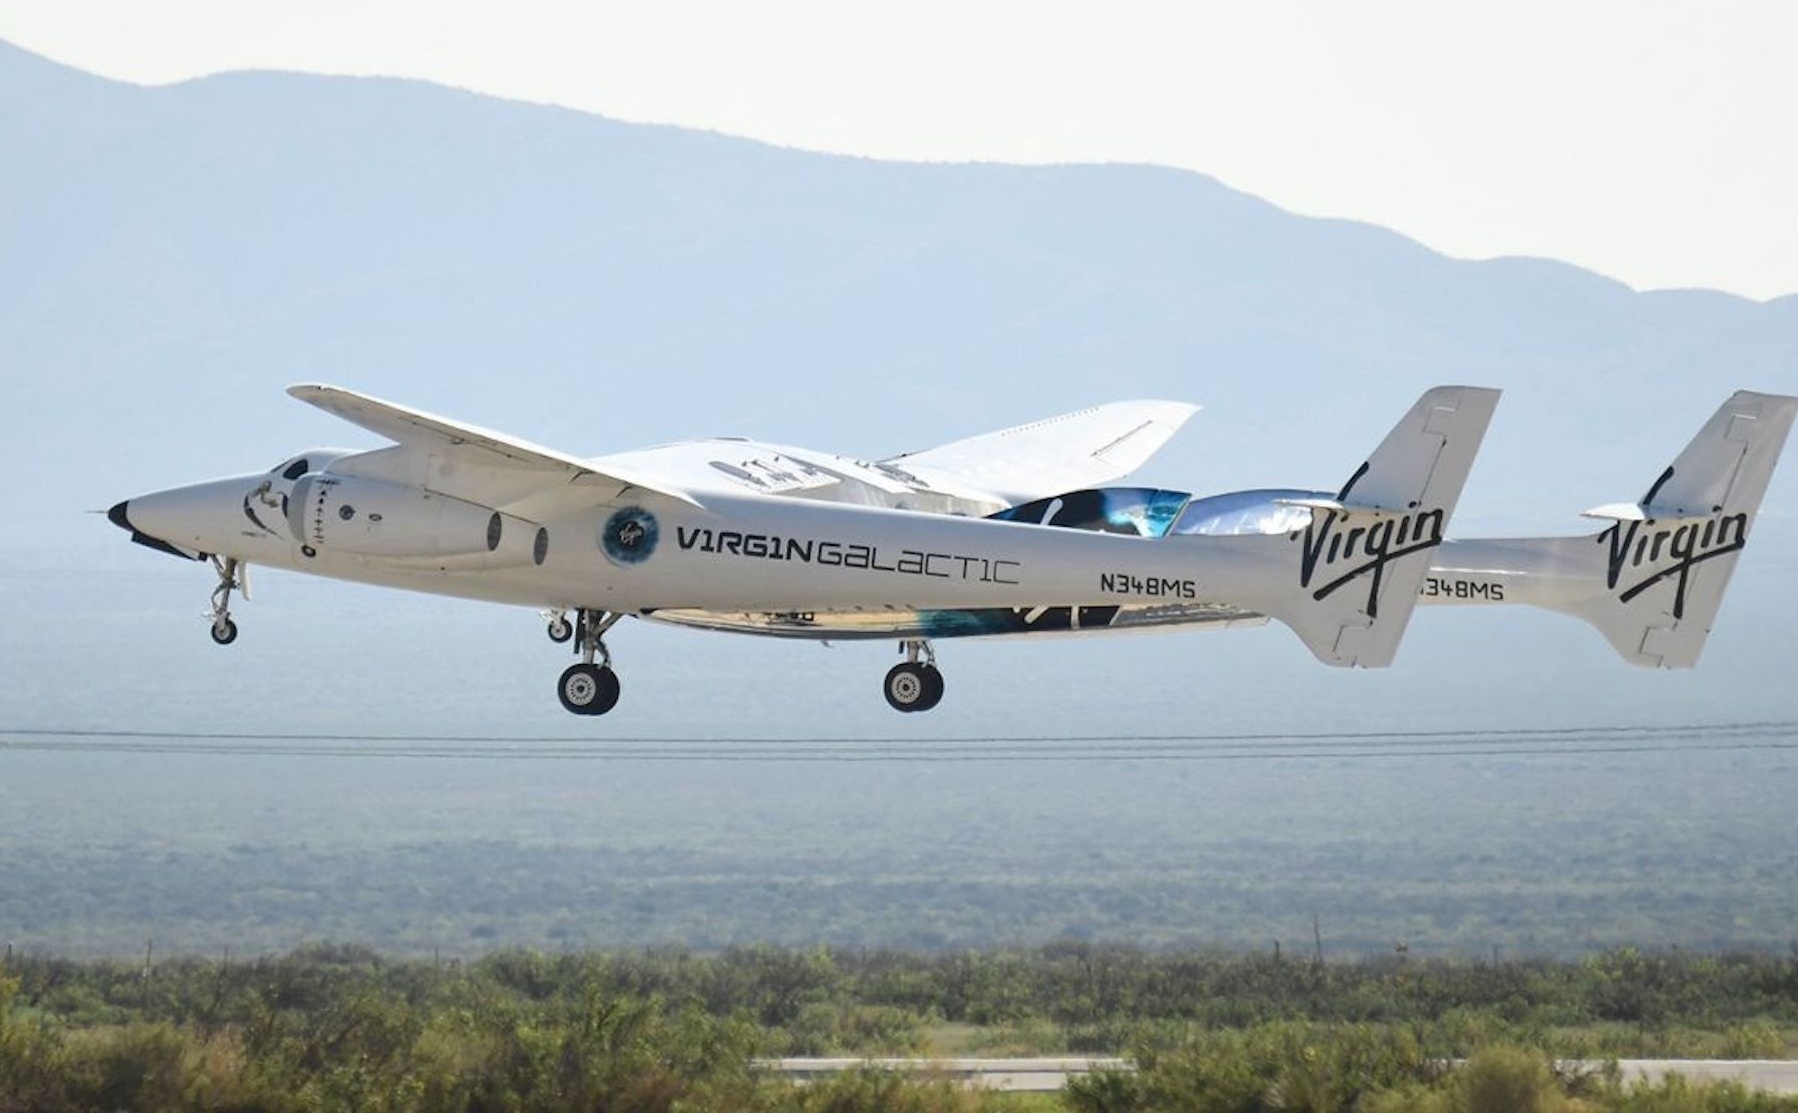 Virgin Galactic quay trở lại đường đua vũ trụ, đưa những du khách đầu tiên đến rìa không gian